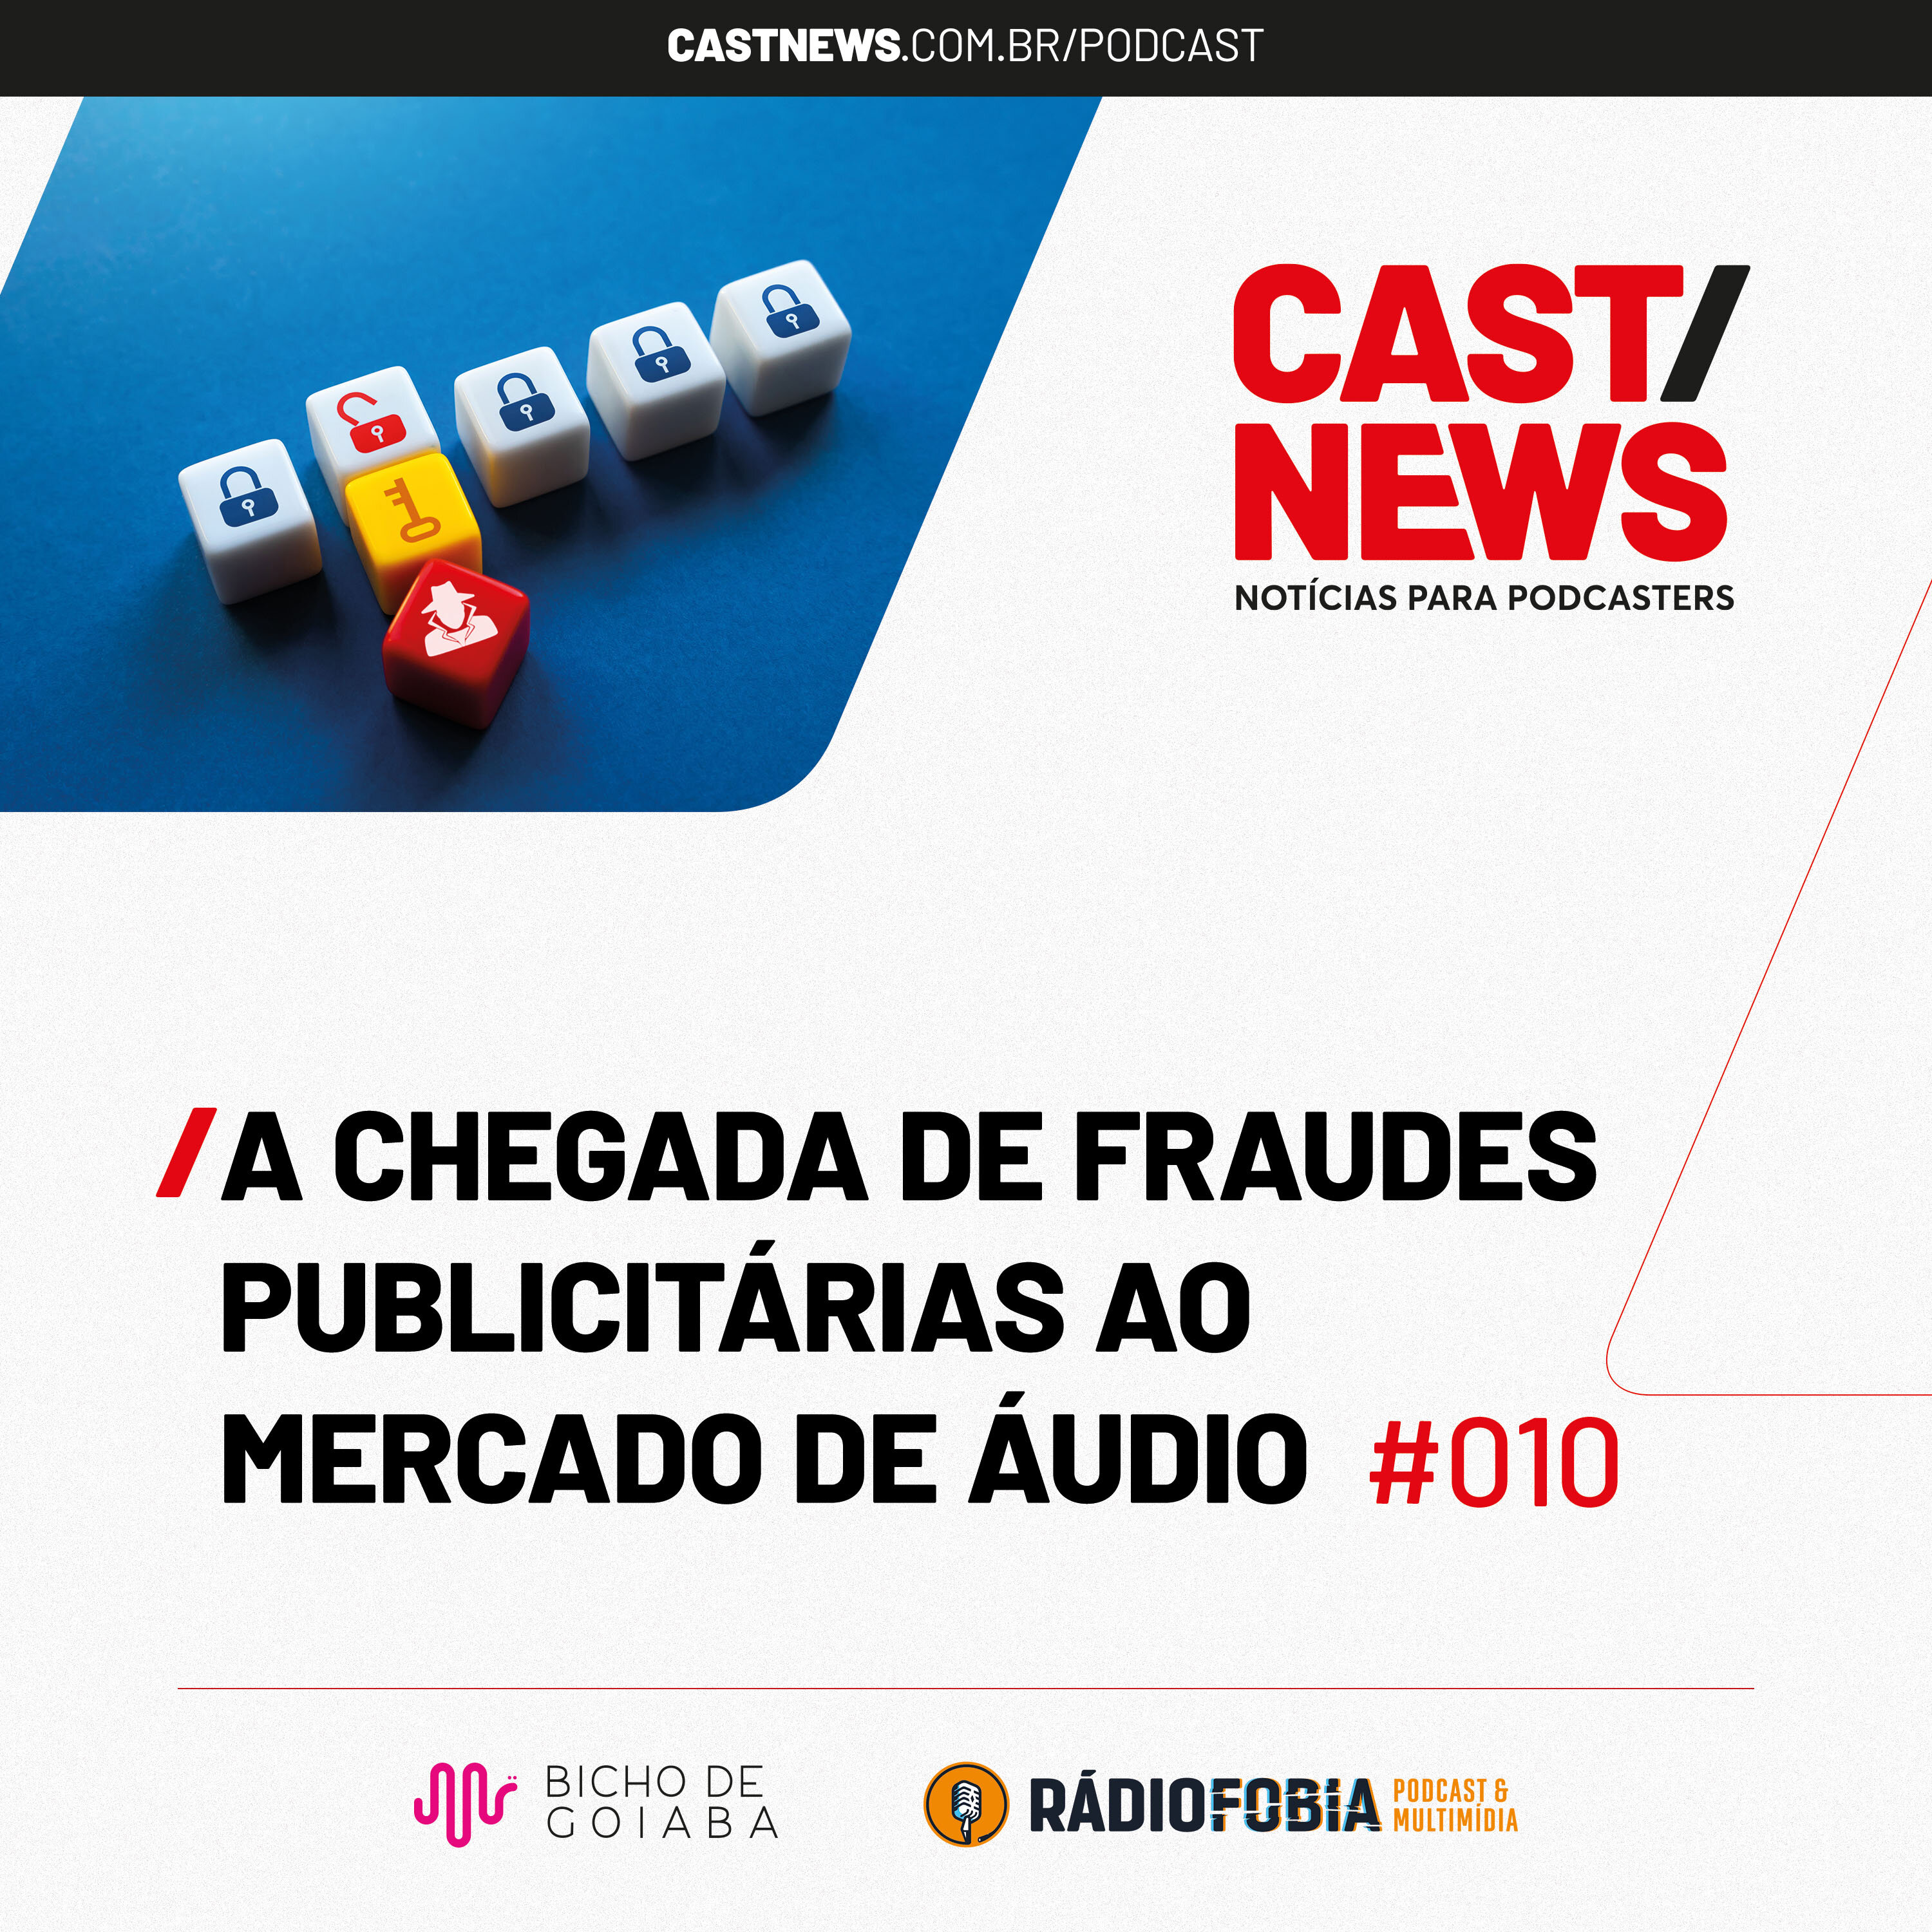 CASTNEWS #010 - A chegada de fraudes publicitárias ao mercado de áudio